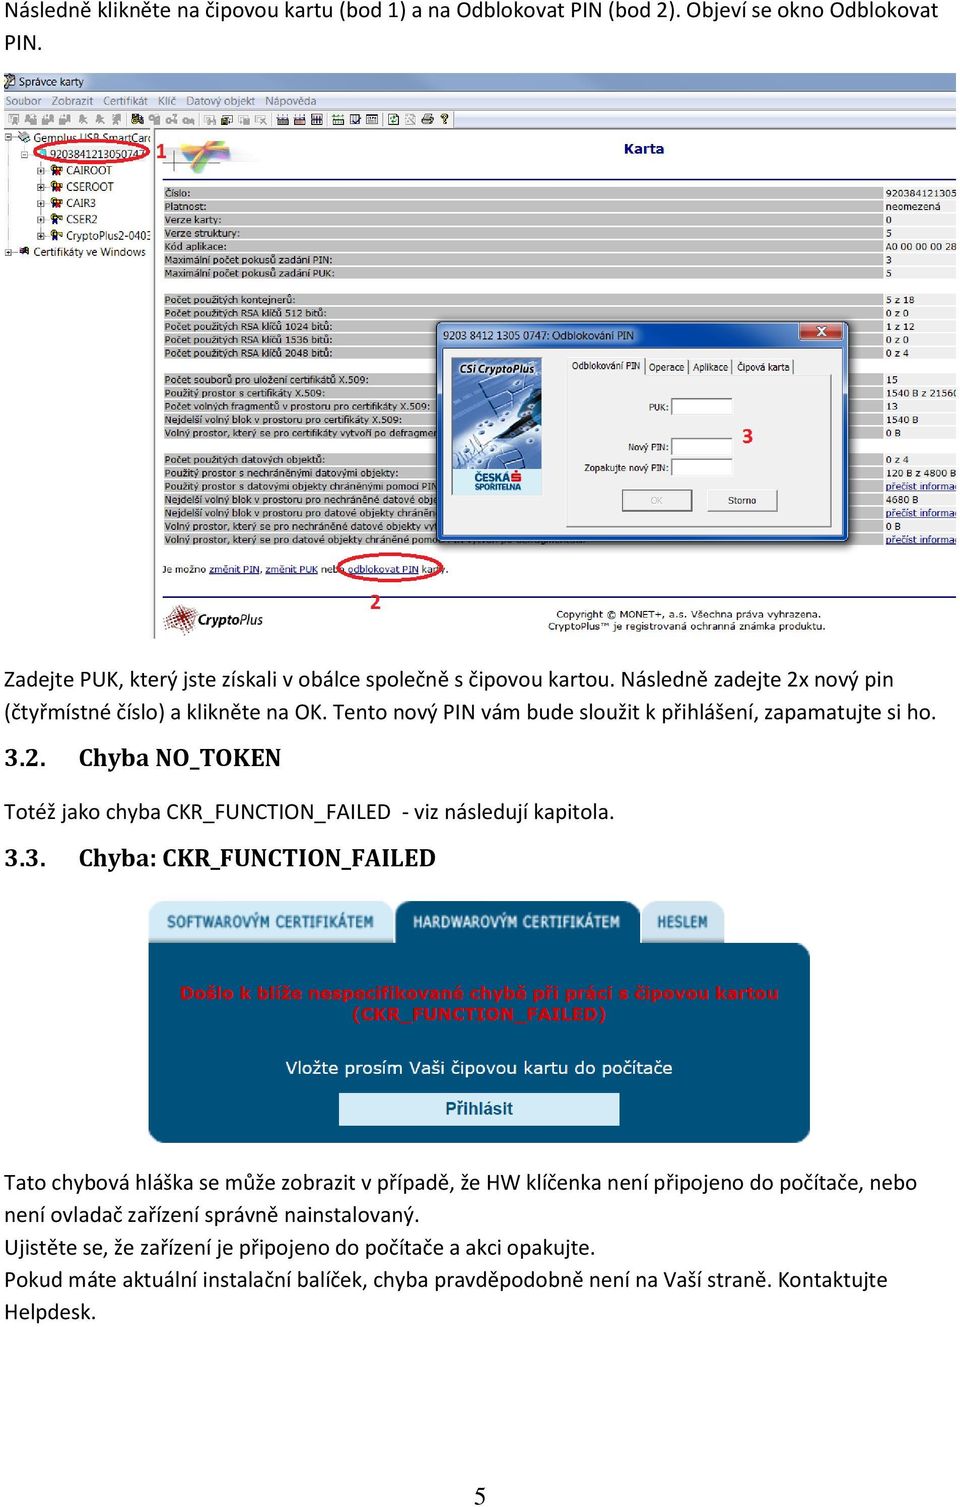 3.3. Chyba: CKR_FUNCTION_FAILED Tato chybová hláška se může zobrazit v případě, že HW klíčenka není připojeno do počítače, nebo není ovladač zařízení správně nainstalovaný.